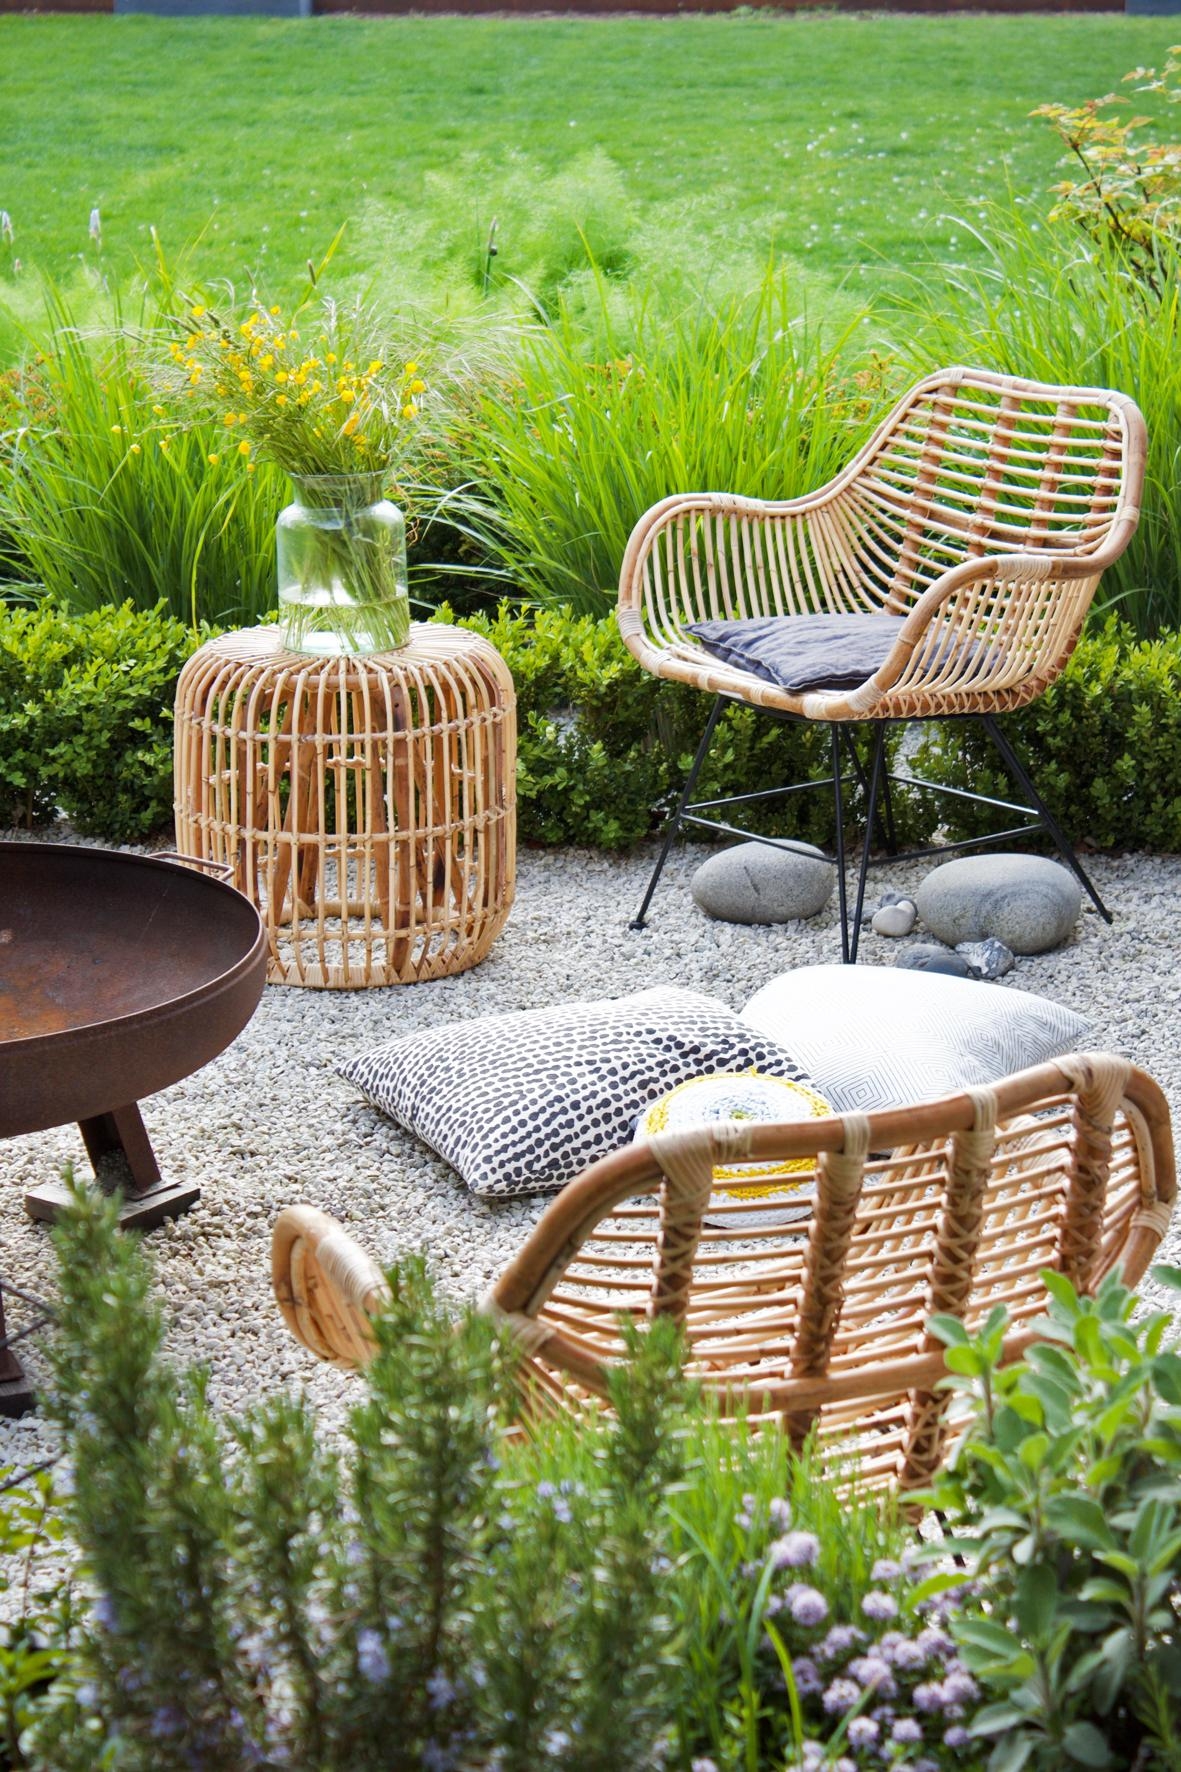 Auf der #Kies- #Terrasse sitzt es sich gerade wunderbar in einem #Rattanstuhl #Rattan #Hocker #Garten #Sommer #Kräuter